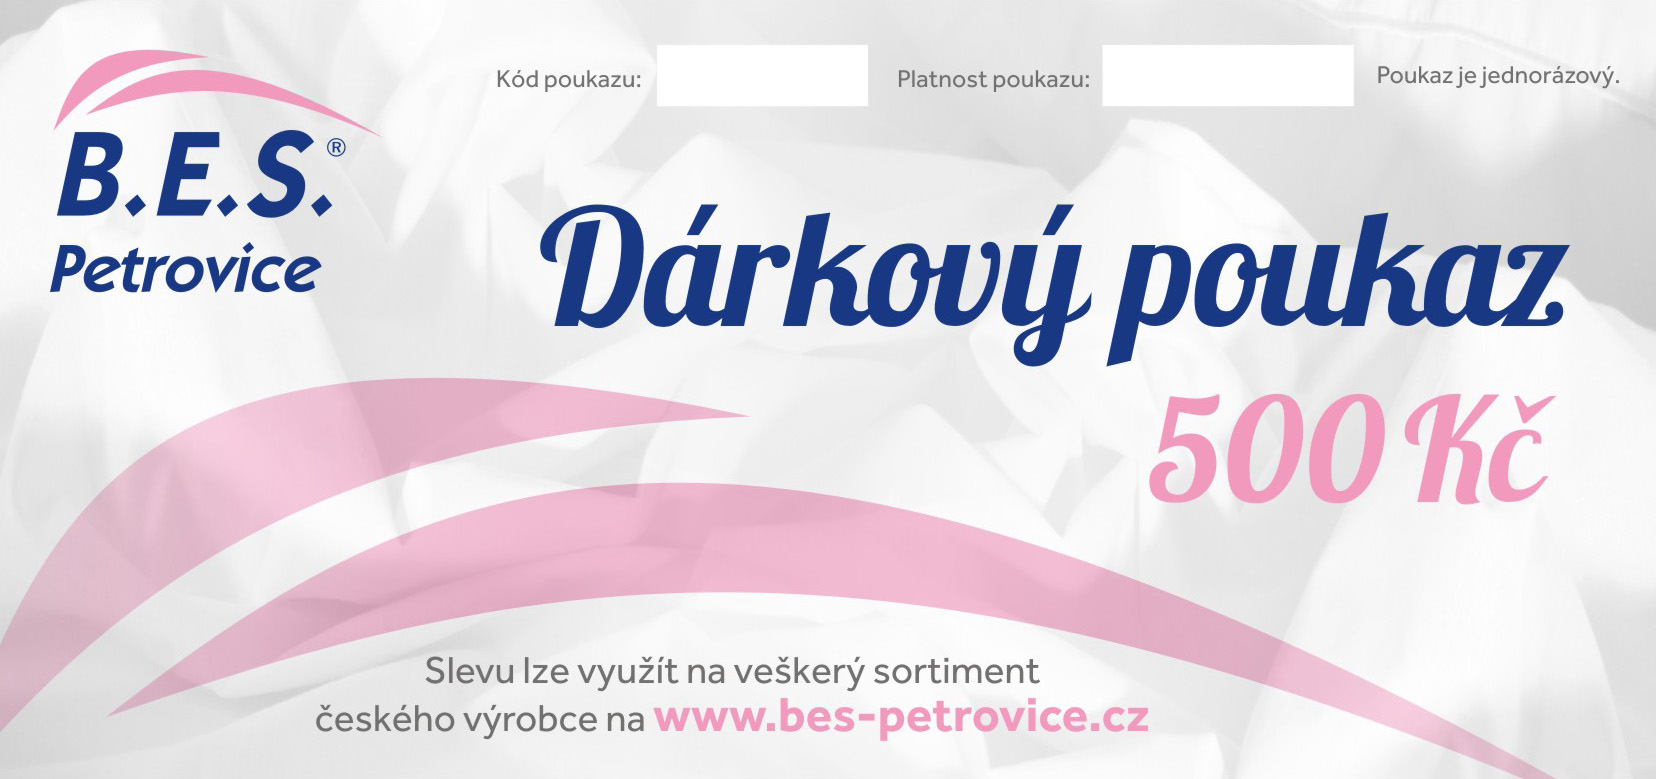 B.E.S. - Petrovice, s.r.o. Dárkový poukaz v hodnotě - 500 Kč